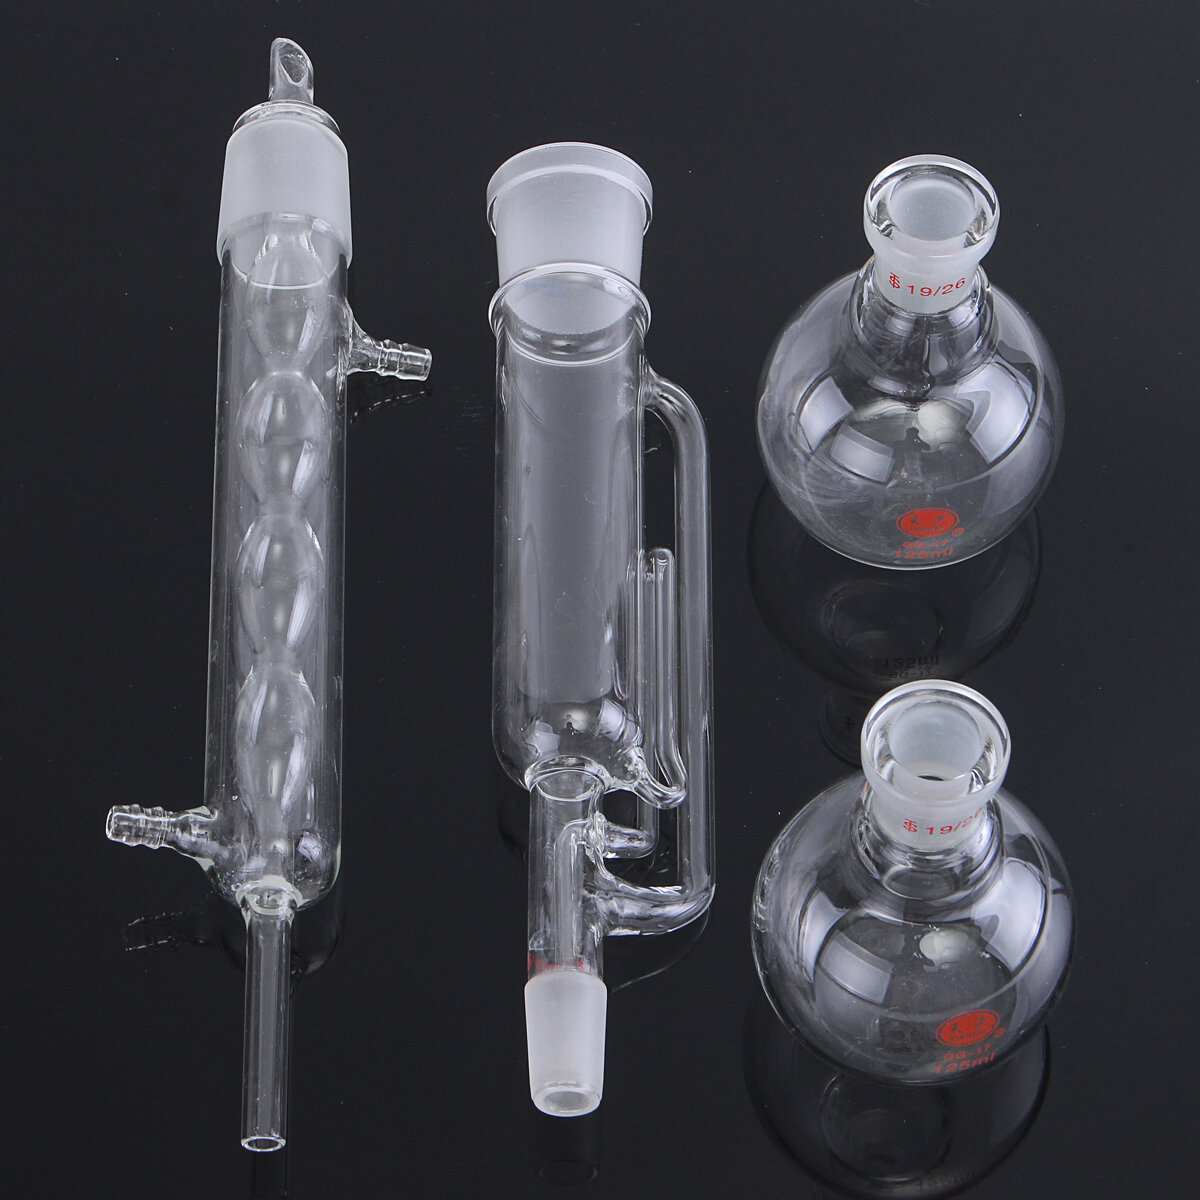 125ml Glas Soxhlet Extractor Kit Condenser en Extractor Met 2x125ml Fles